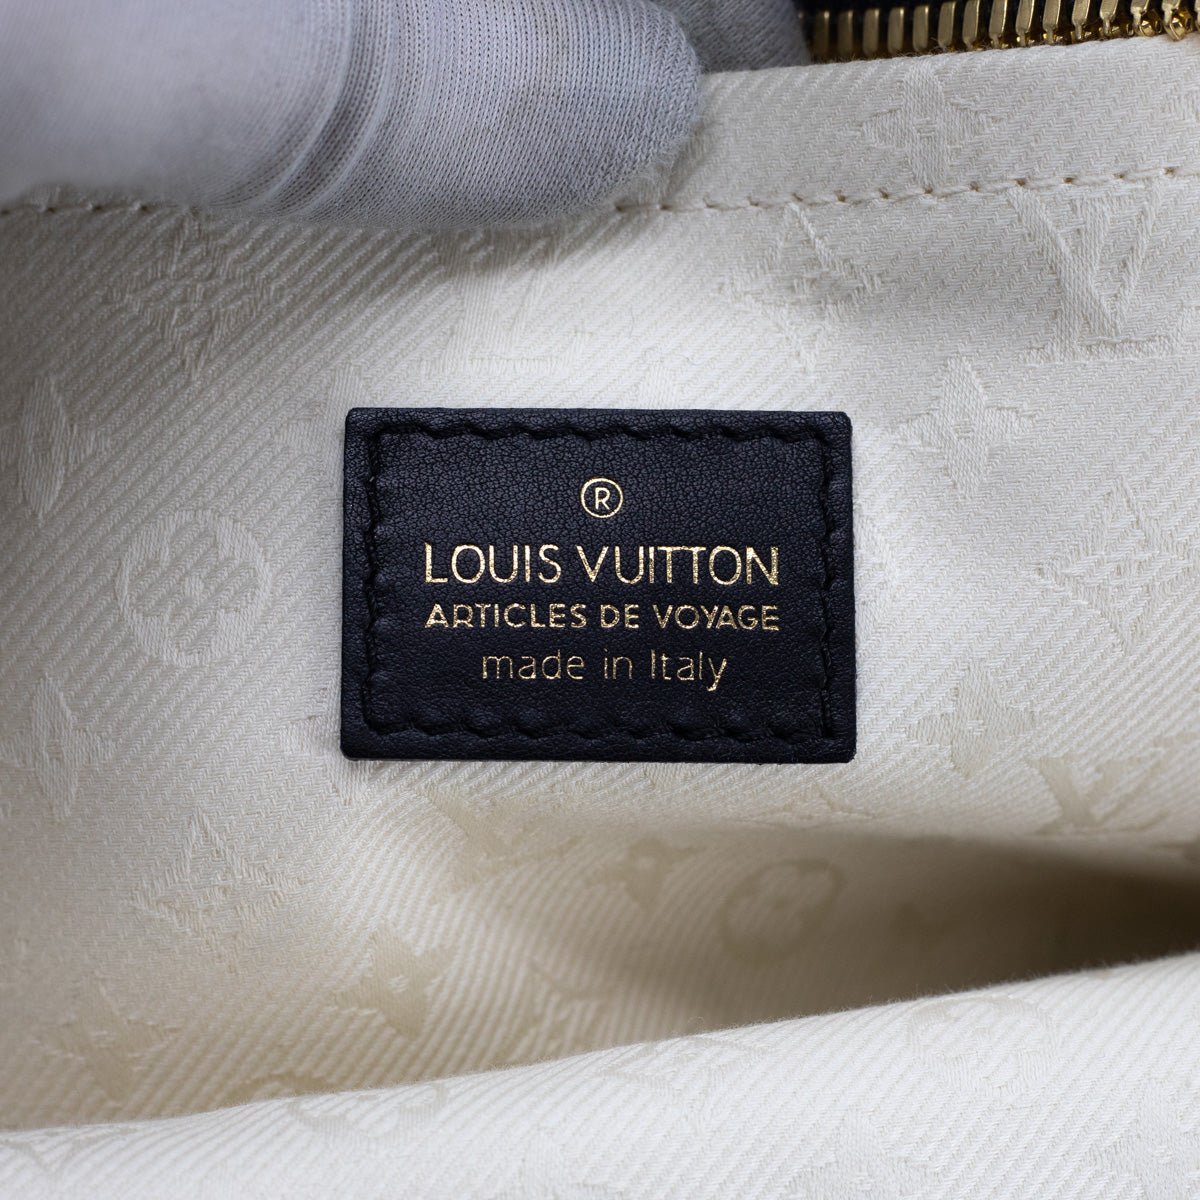 Asnières The “Heart”of Louis Vuitton - A&E Magazine